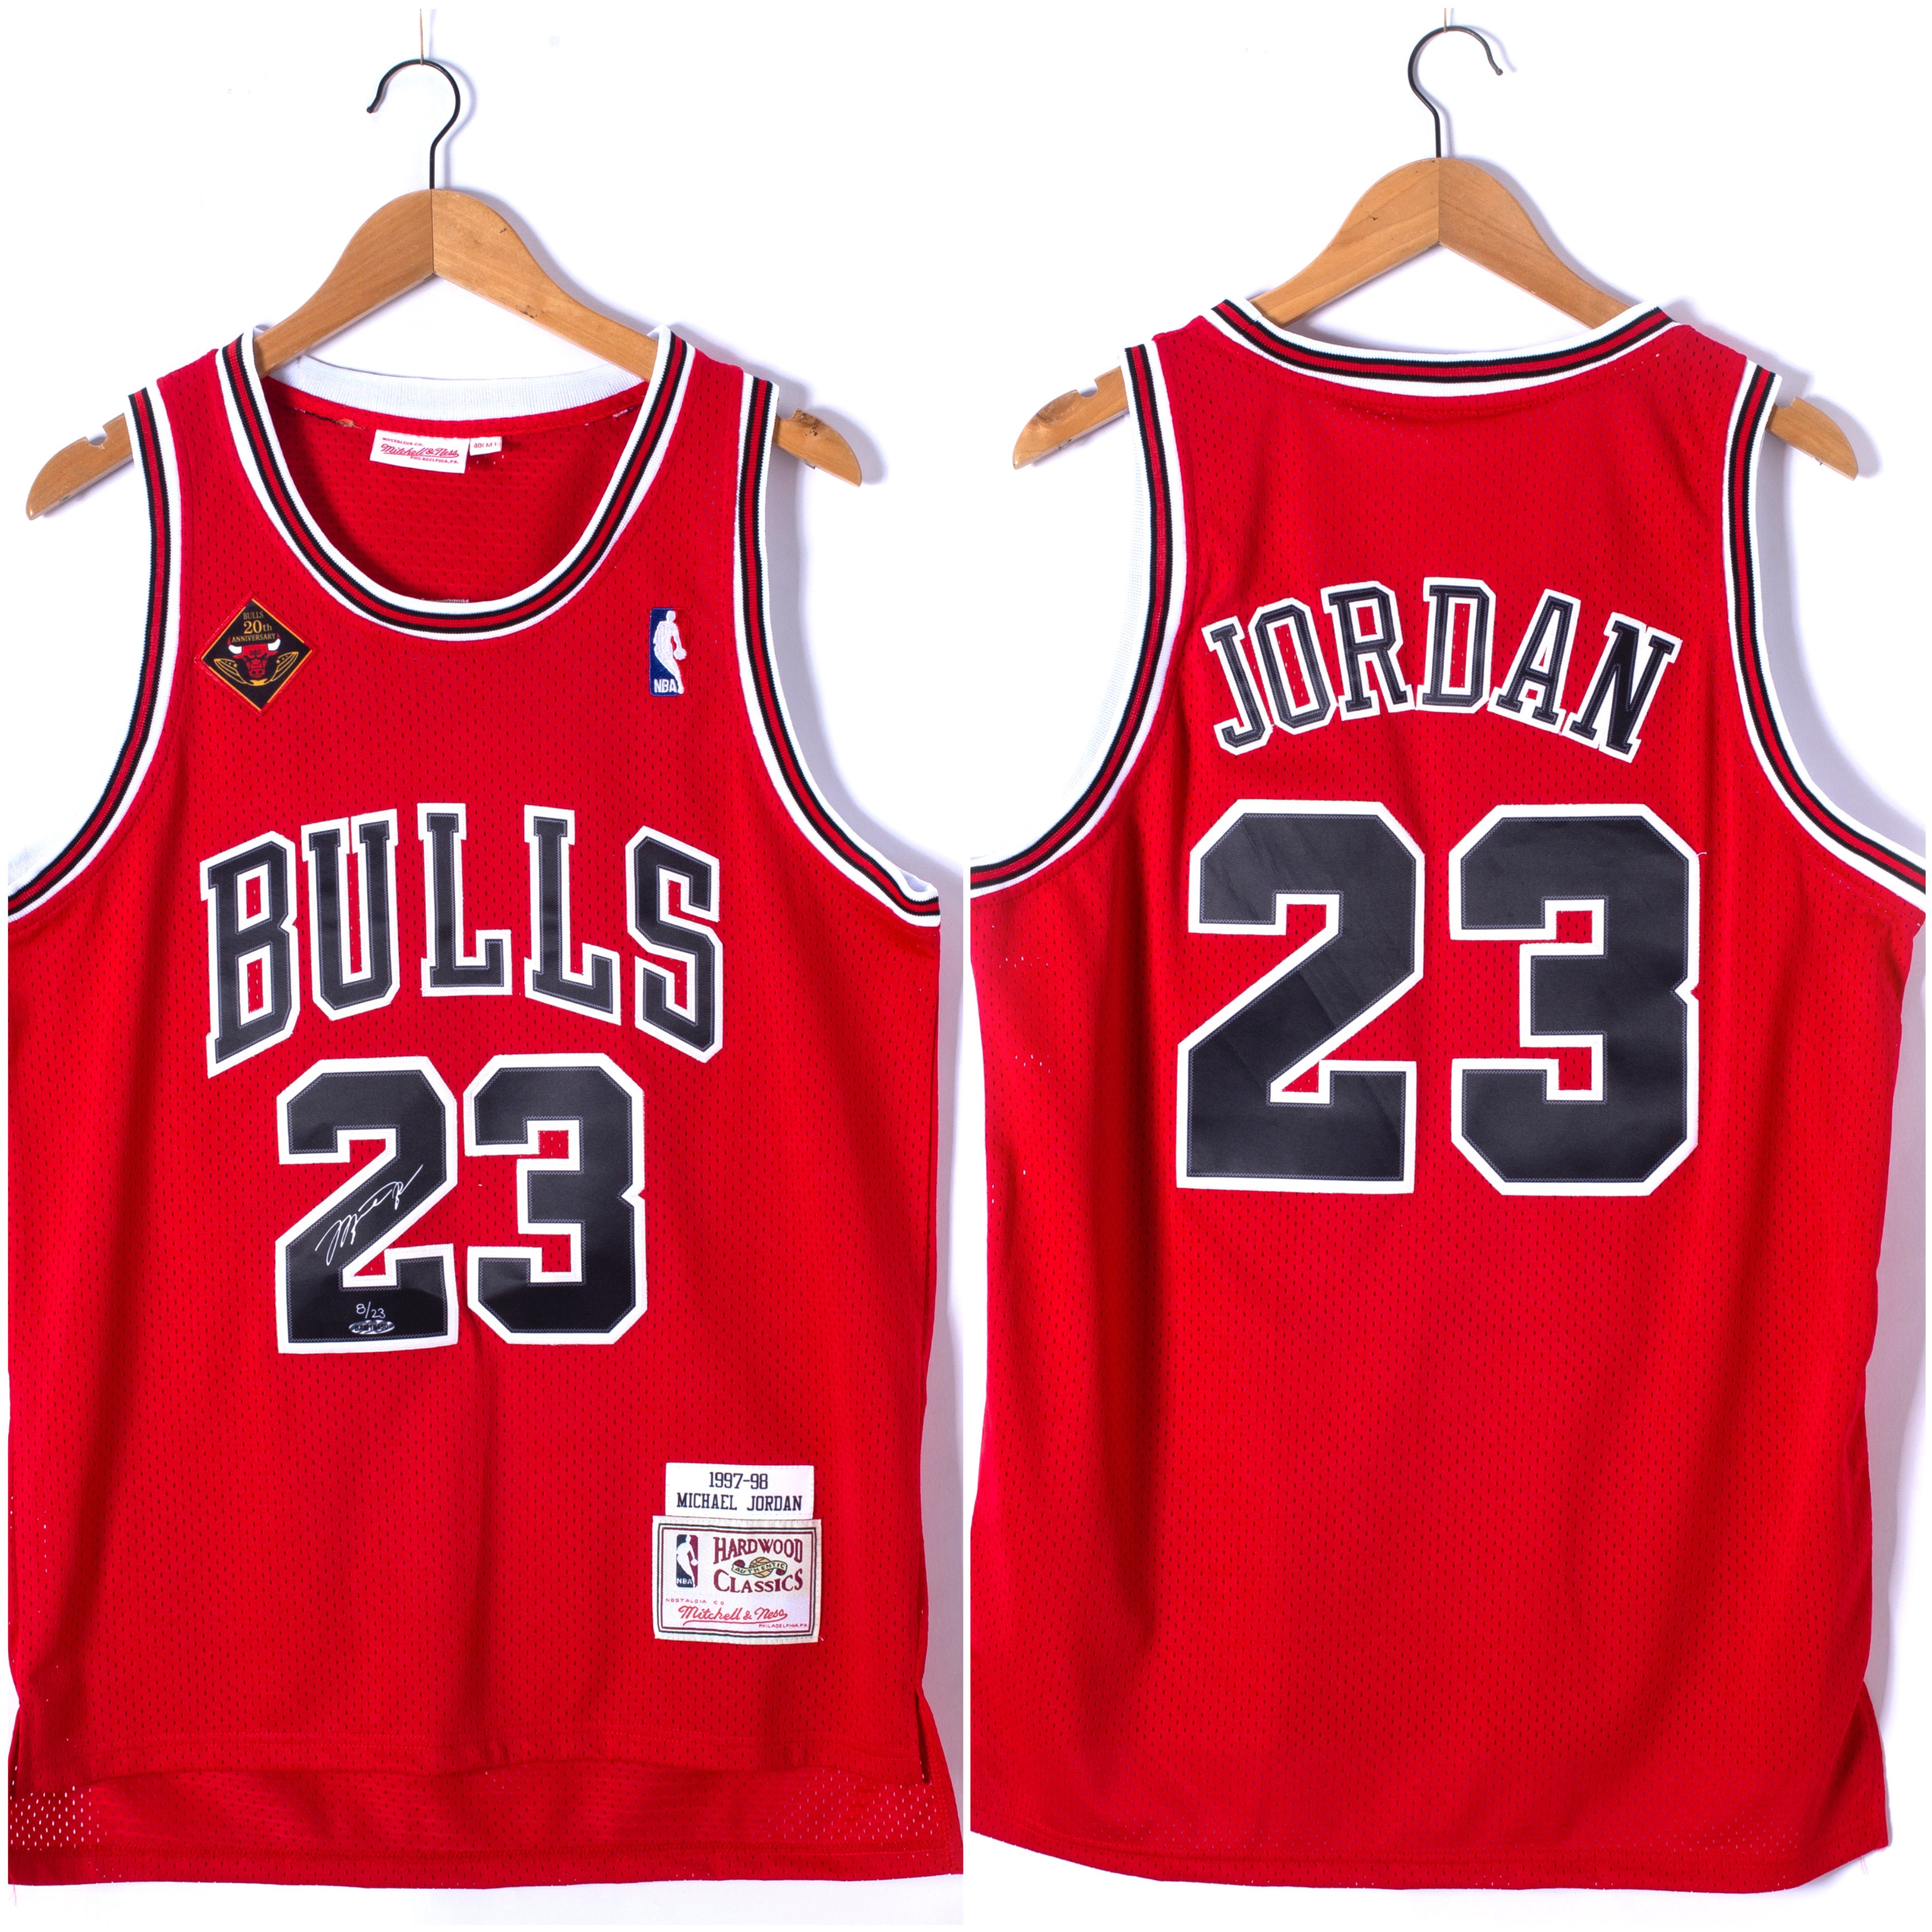  Mitchell & Ness Chicago Bulls NBA 40th Anniversary